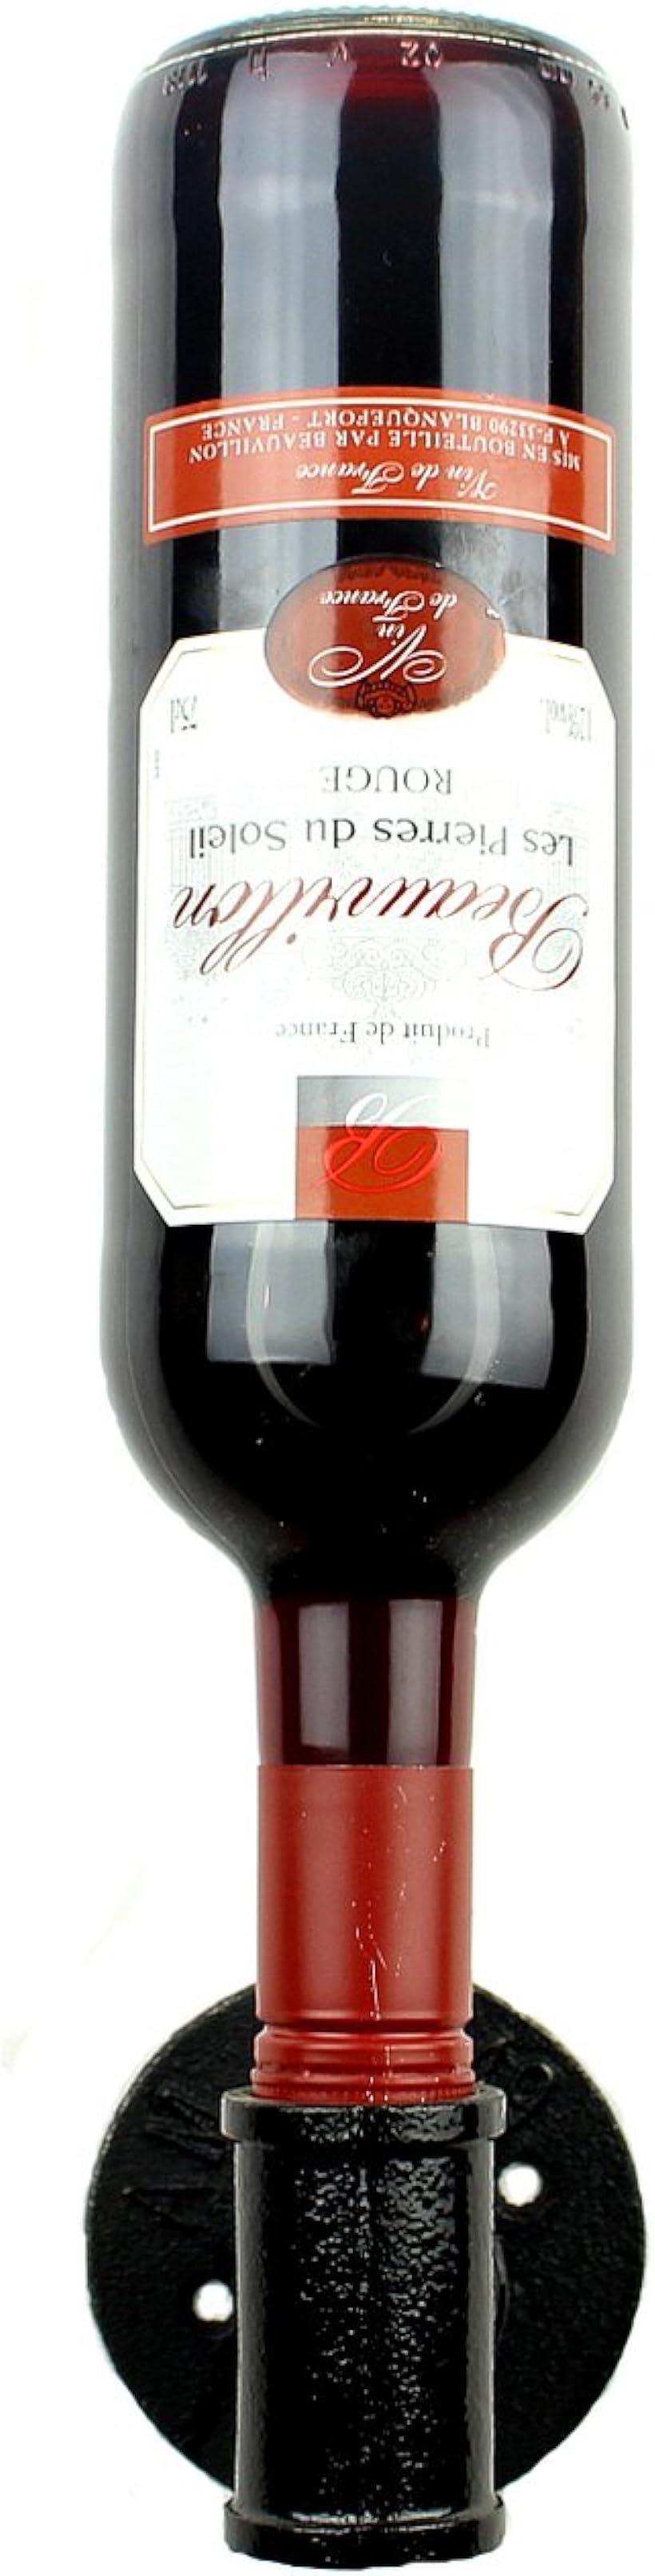 バリエーションコード : 2b8fktj95p商品コード2b8fvrgh6i商品名パイプ型 壁掛け ワインホルダー ラック ワイン シャンパン ボトル ハンガー ケース インテリア W39 ブラックブランドAnberottaカラーブラック・特別なワインをオシャレに置ける壁掛けのビンテージ風パイプ型「ワインラック」です。・インテリアにも最適でオシャレな壁掛け型ワインラック。・レトロなアンティーク調のデザインが素敵です。特別な一本を置いておくのに最適です。・キッチン、ダイニングルーム、お店の空間をチョット素敵に演出します。ワインと一緒にプレゼントしても喜んでもらえる逸品です。・＊収納：ワインボトル1本 ＊サイズ：幅8.5cmx高さ8.5cmx奥行き9.5cm ＊材質：鉄製※ 他ネットショップでも併売しているため、ご注文後に在庫切れとなる場合があります。予めご了承ください。※ 品薄または希少等の理由により、参考価格よりも高い価格で販売されている場合があります。ご注文の際には必ず販売価格をご確認ください。※ 沖縄県、離島または一部地域の場合、別途送料の負担をお願いする場合があります。予めご了承ください。※ お使いのモニタにより写真の色が実際の商品の色と異なる場合や、イメージに差異が生じることがあります。予めご了承ください。※ 商品の詳細（カラー・数量・サイズ 等）については、ページ内の商品説明をご確認のうえ、ご注文ください。※ モバイル版・スマホ版ページでは、お使いの端末によっては一部の情報が表示されないことがあります。すべての記載情報をご確認するには、PC版ページをご覧ください。色:ブラック「特別なワインをオシャレに置ける壁掛けのビンテージ風パイプ型ワインラック。。」レトロなアンティーク調のデザインが素敵です。特別な一本を置いておくのに最適です。キッチン、ダイニングルーム、お店の空間をチョット素敵に演出します。ワインと一緒にプレゼントしても喜んでもらえる逸品です。「商品説明」＊収納：ワインボトル1本＊サイズ：幅8.5cmx高さ8.5cmx奥行き9.5cm＊カラー：ブラック＊材質：鉄製